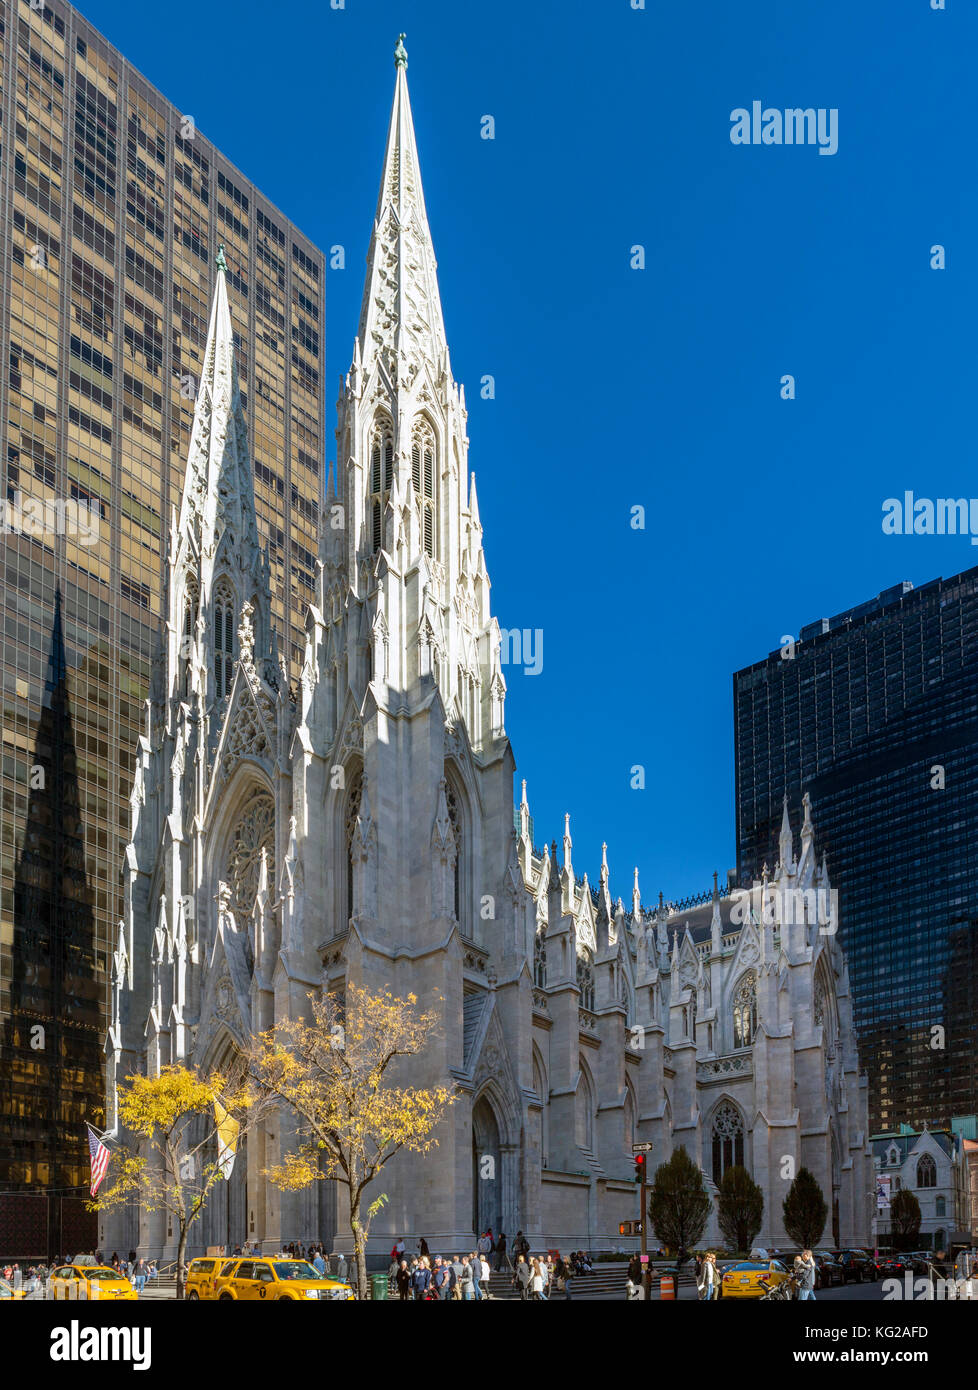 St Patricks's Cathedral, 5th Avenue, New York City, NY, USA Stock Photo